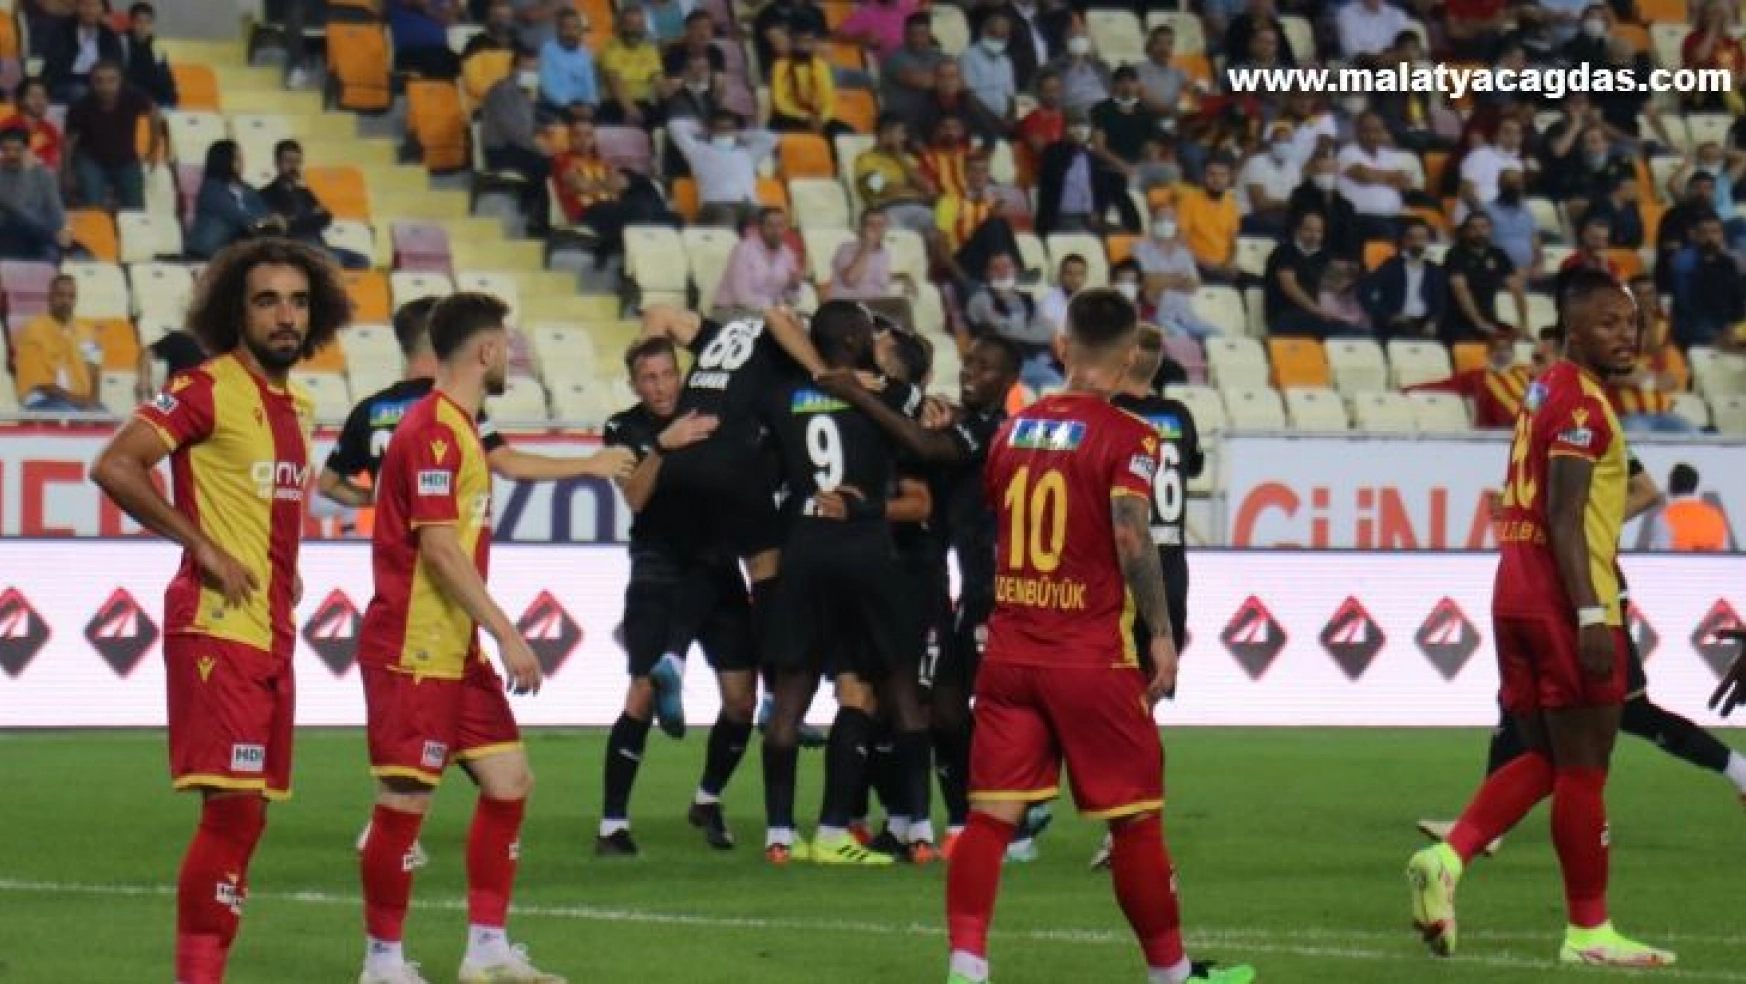 Malatya'da Kazanan Sivasspor Oldu 1-0